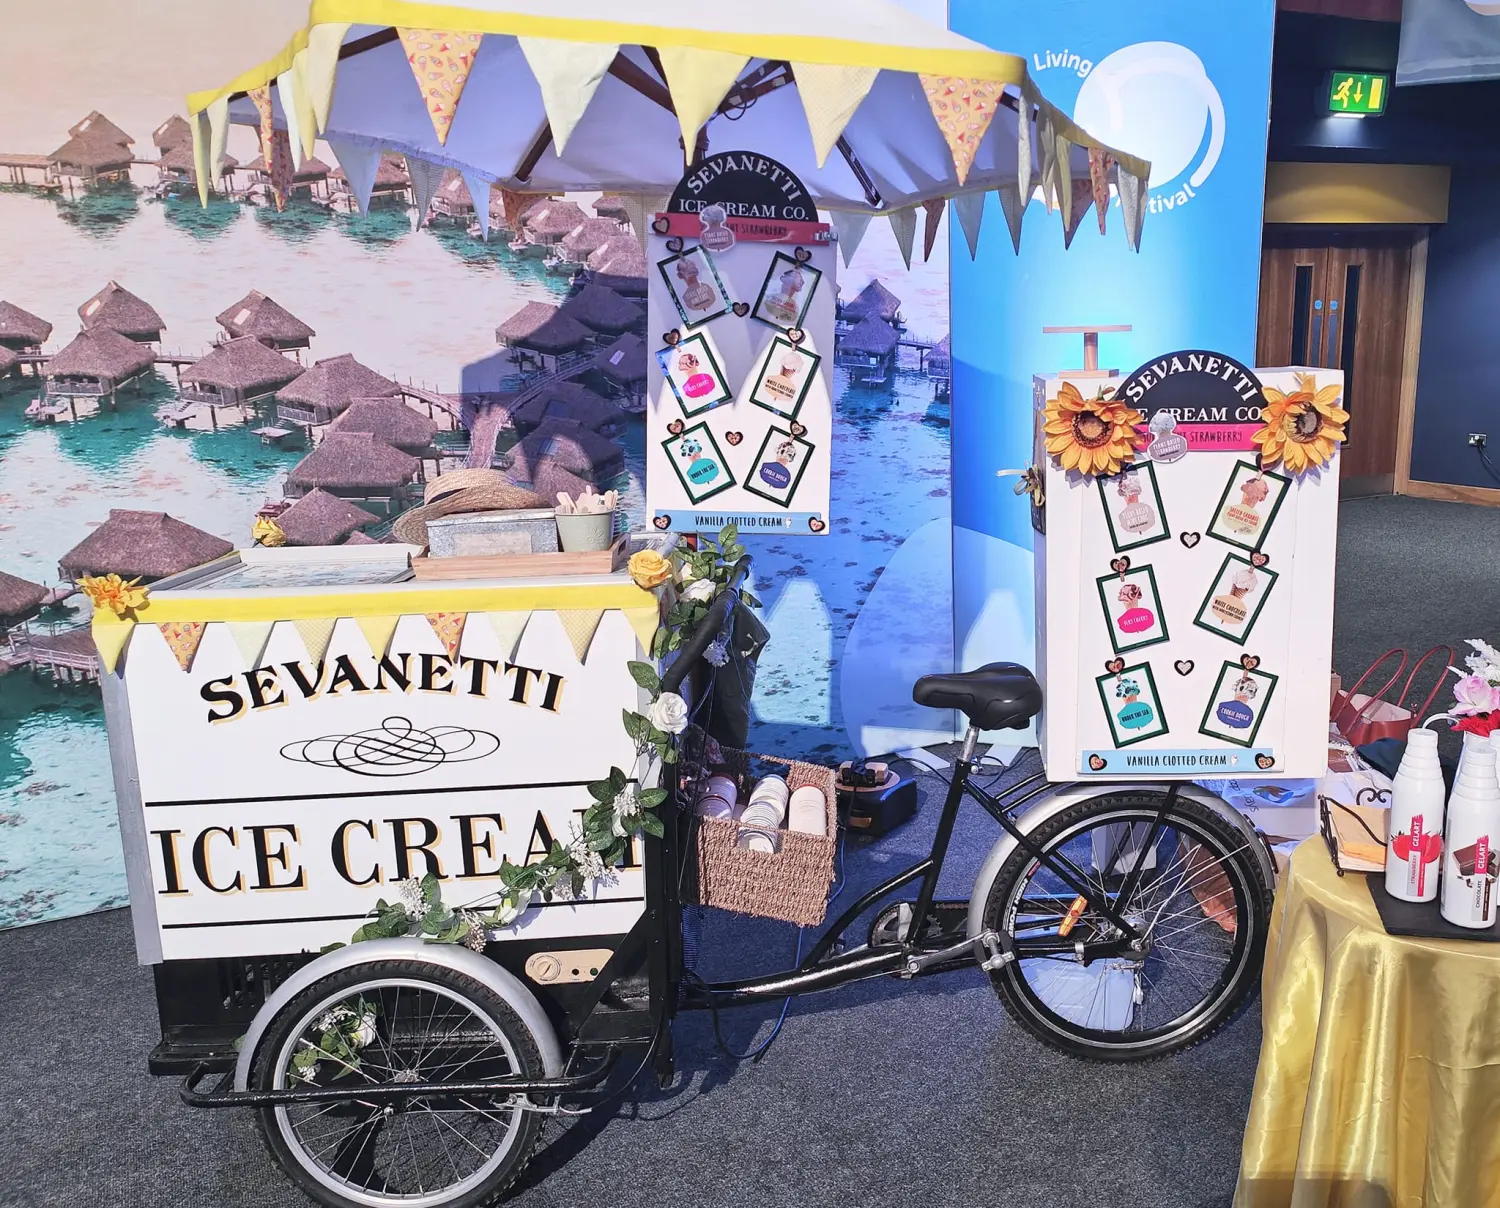 Sevanetti Ice Cream Bikes colorful decoration sets